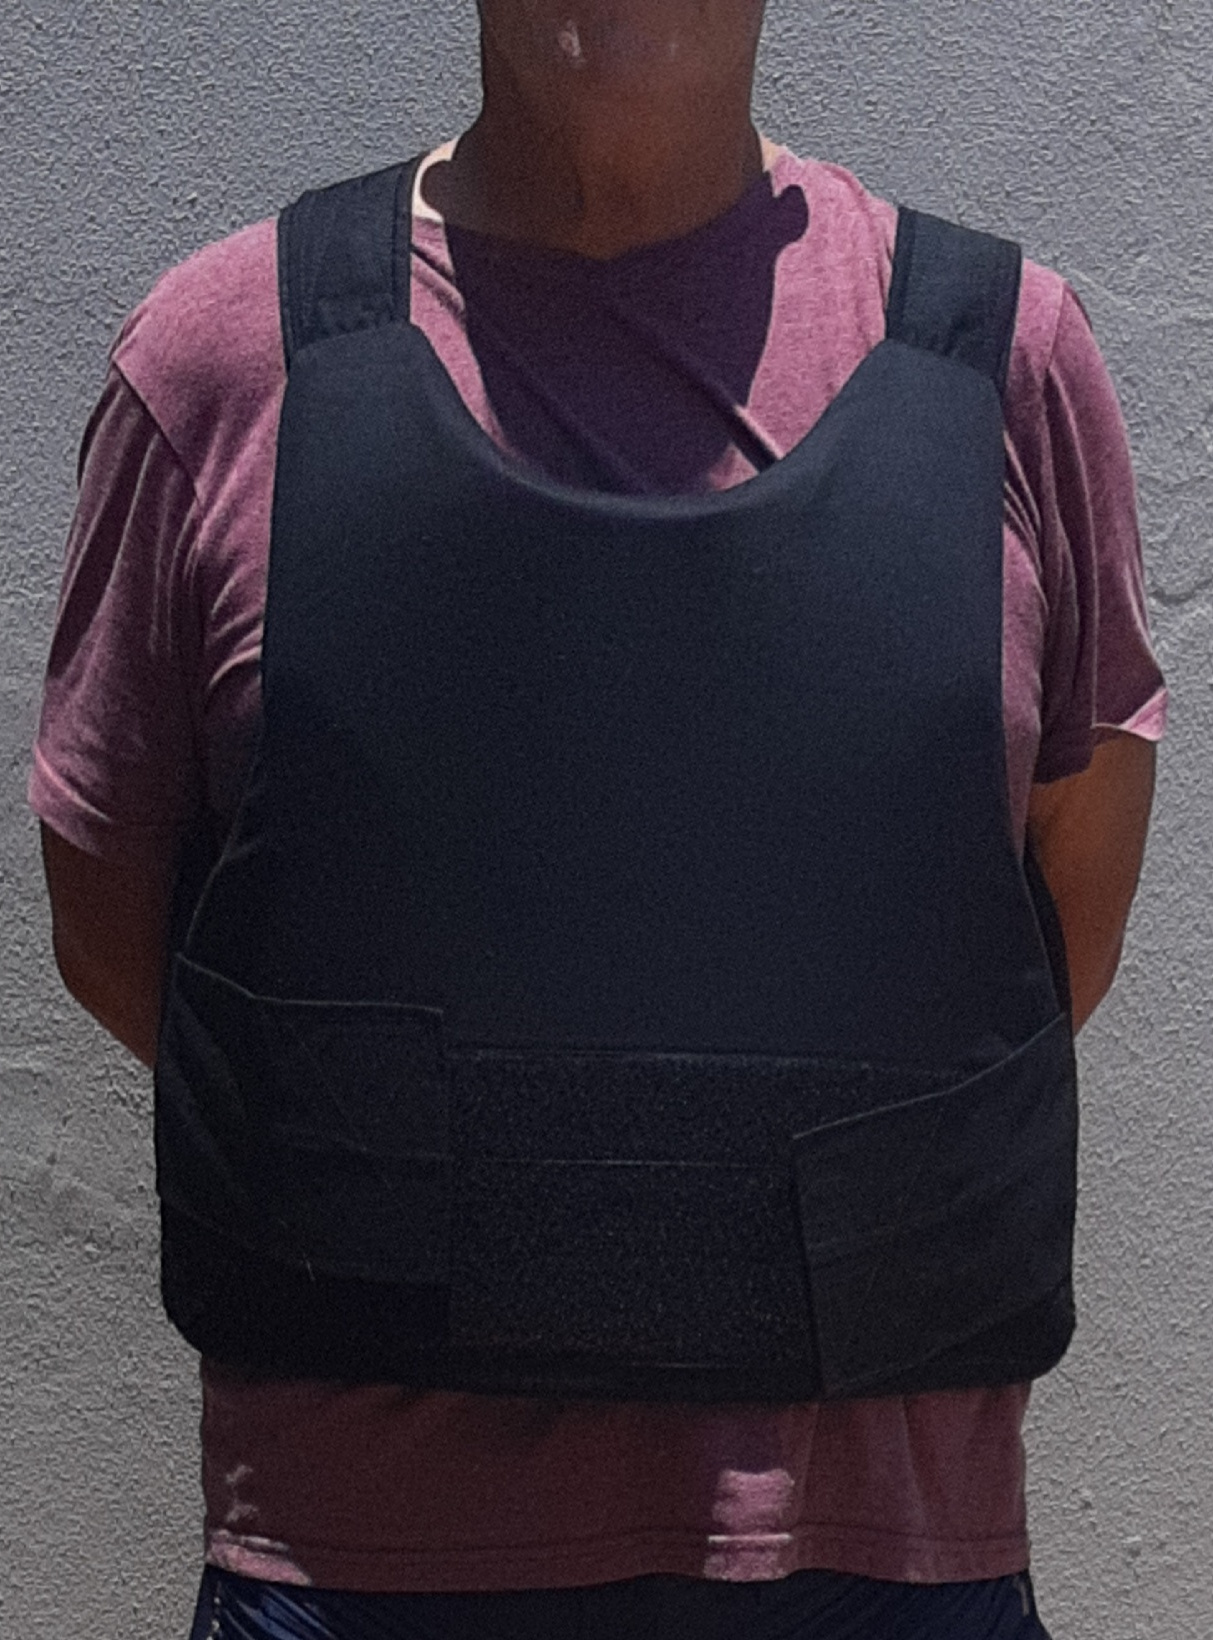 Hidden bullet/stab proof vest